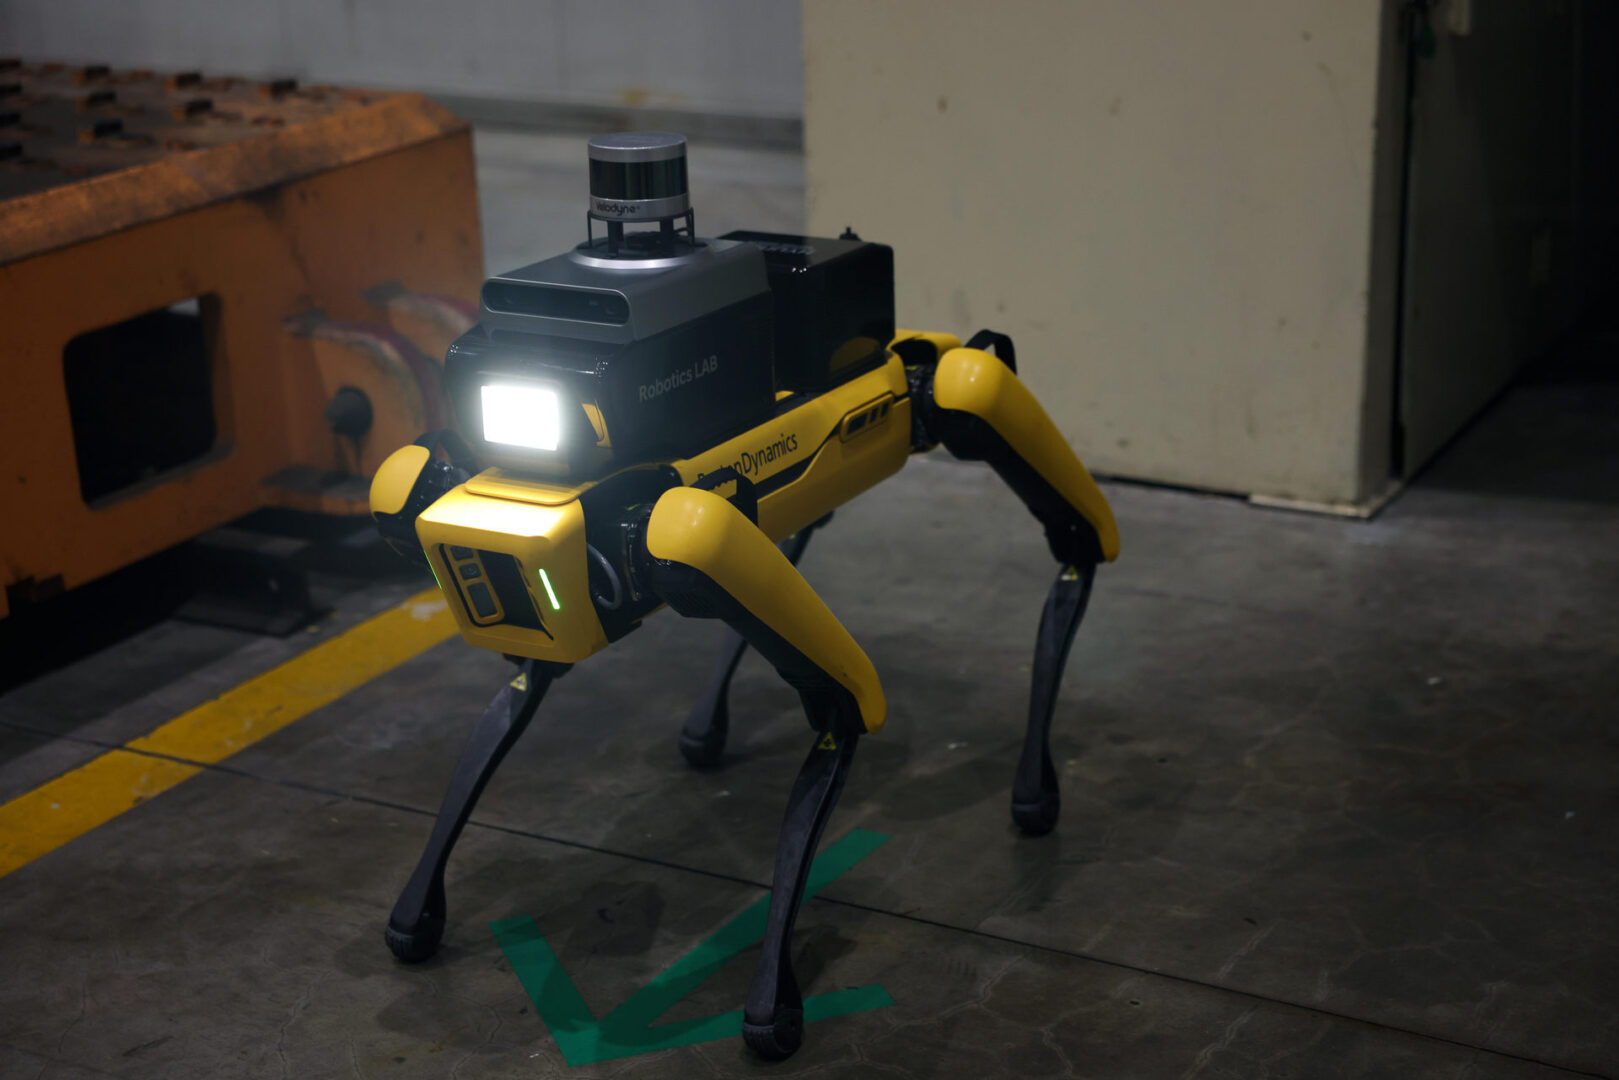 هيونداي تكشف عن روبوت جديد لخدمة وحماية مصانعها!